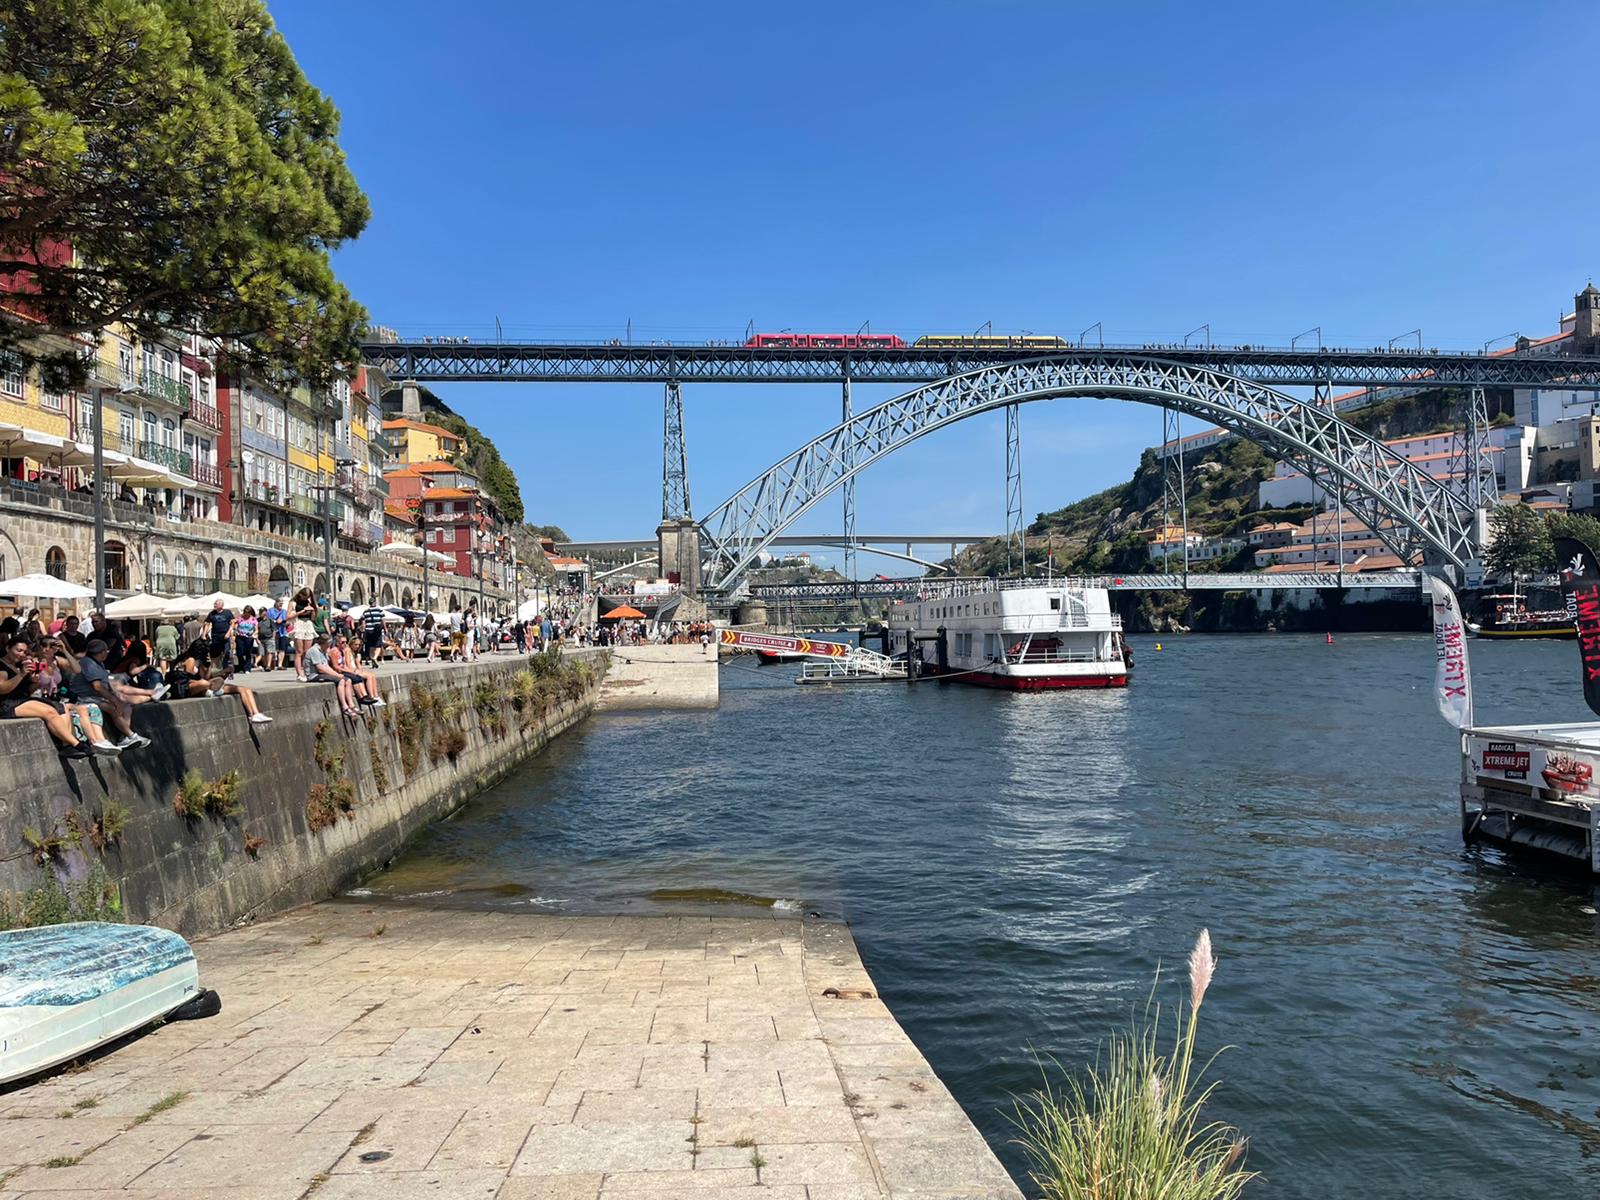 התיירות בפורטוגל בוערת!! 90% בשיעור התפוסה במקומות הלינה ביולי